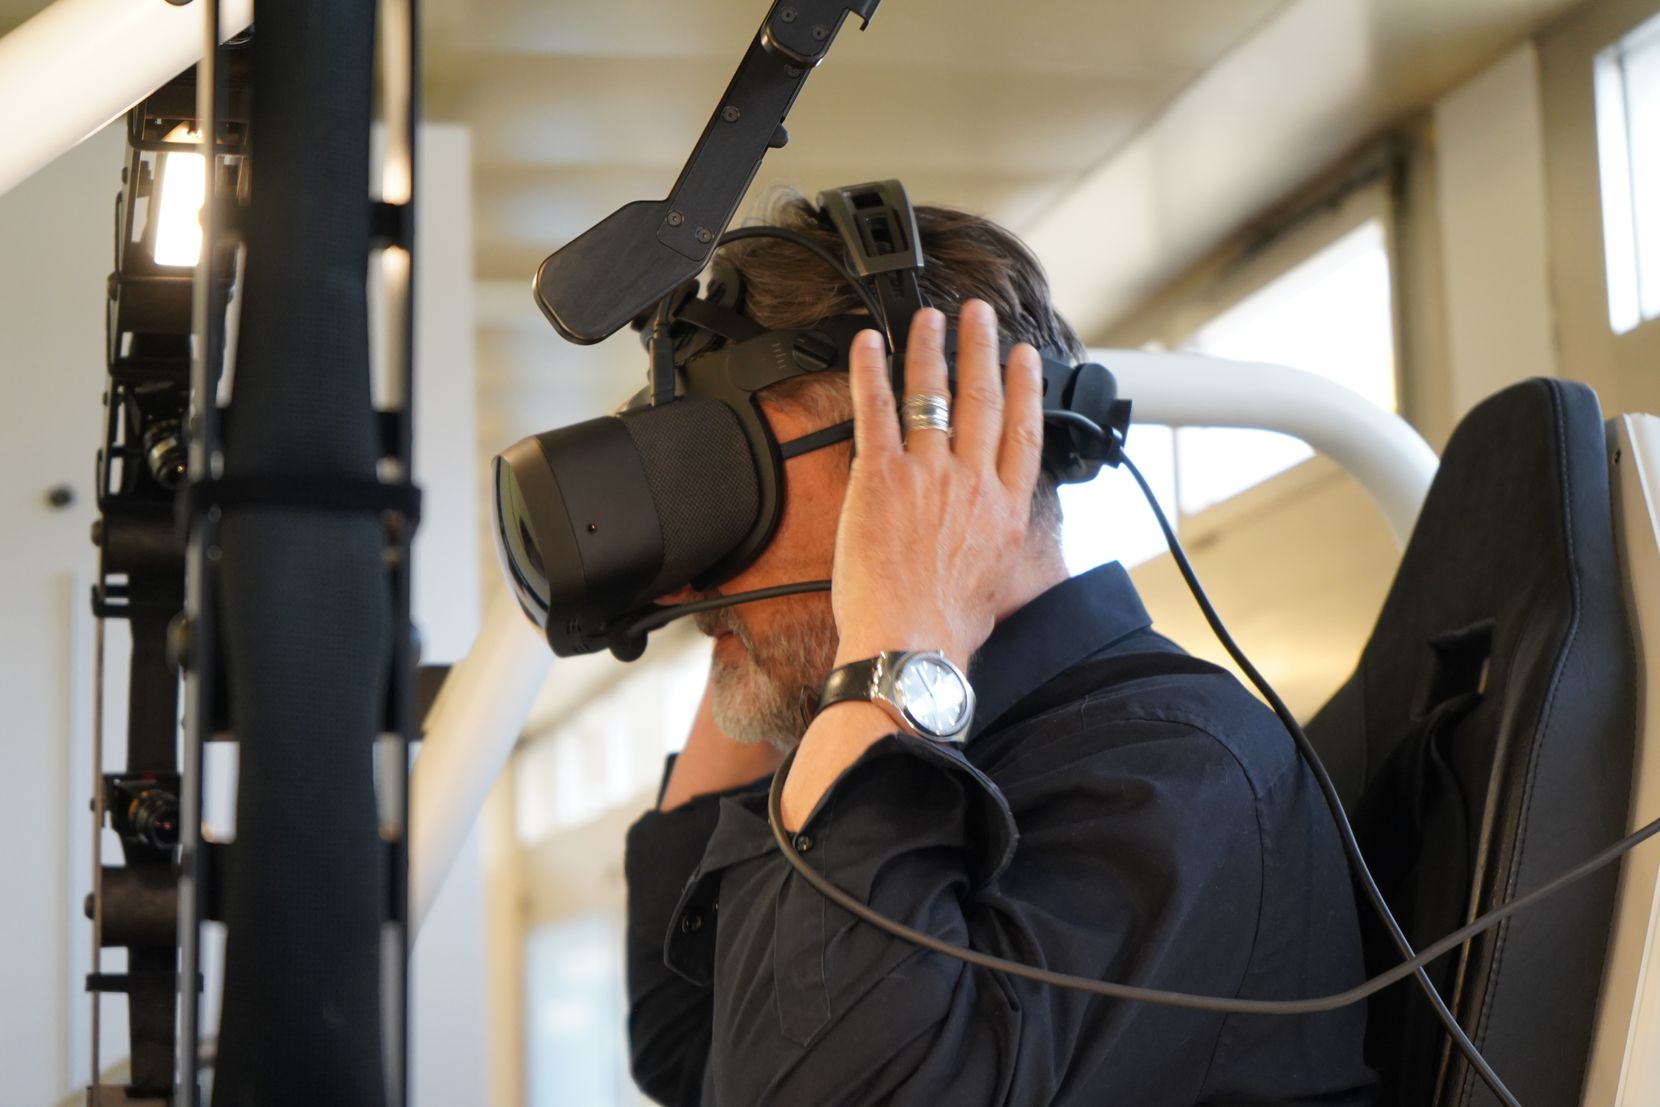 Besuch bei Loft Dynamics in Dübendorf. Firmengründer Fabian Riesen führt durch das Unternehmen, das Flugsimulatoren mit VR produziert.